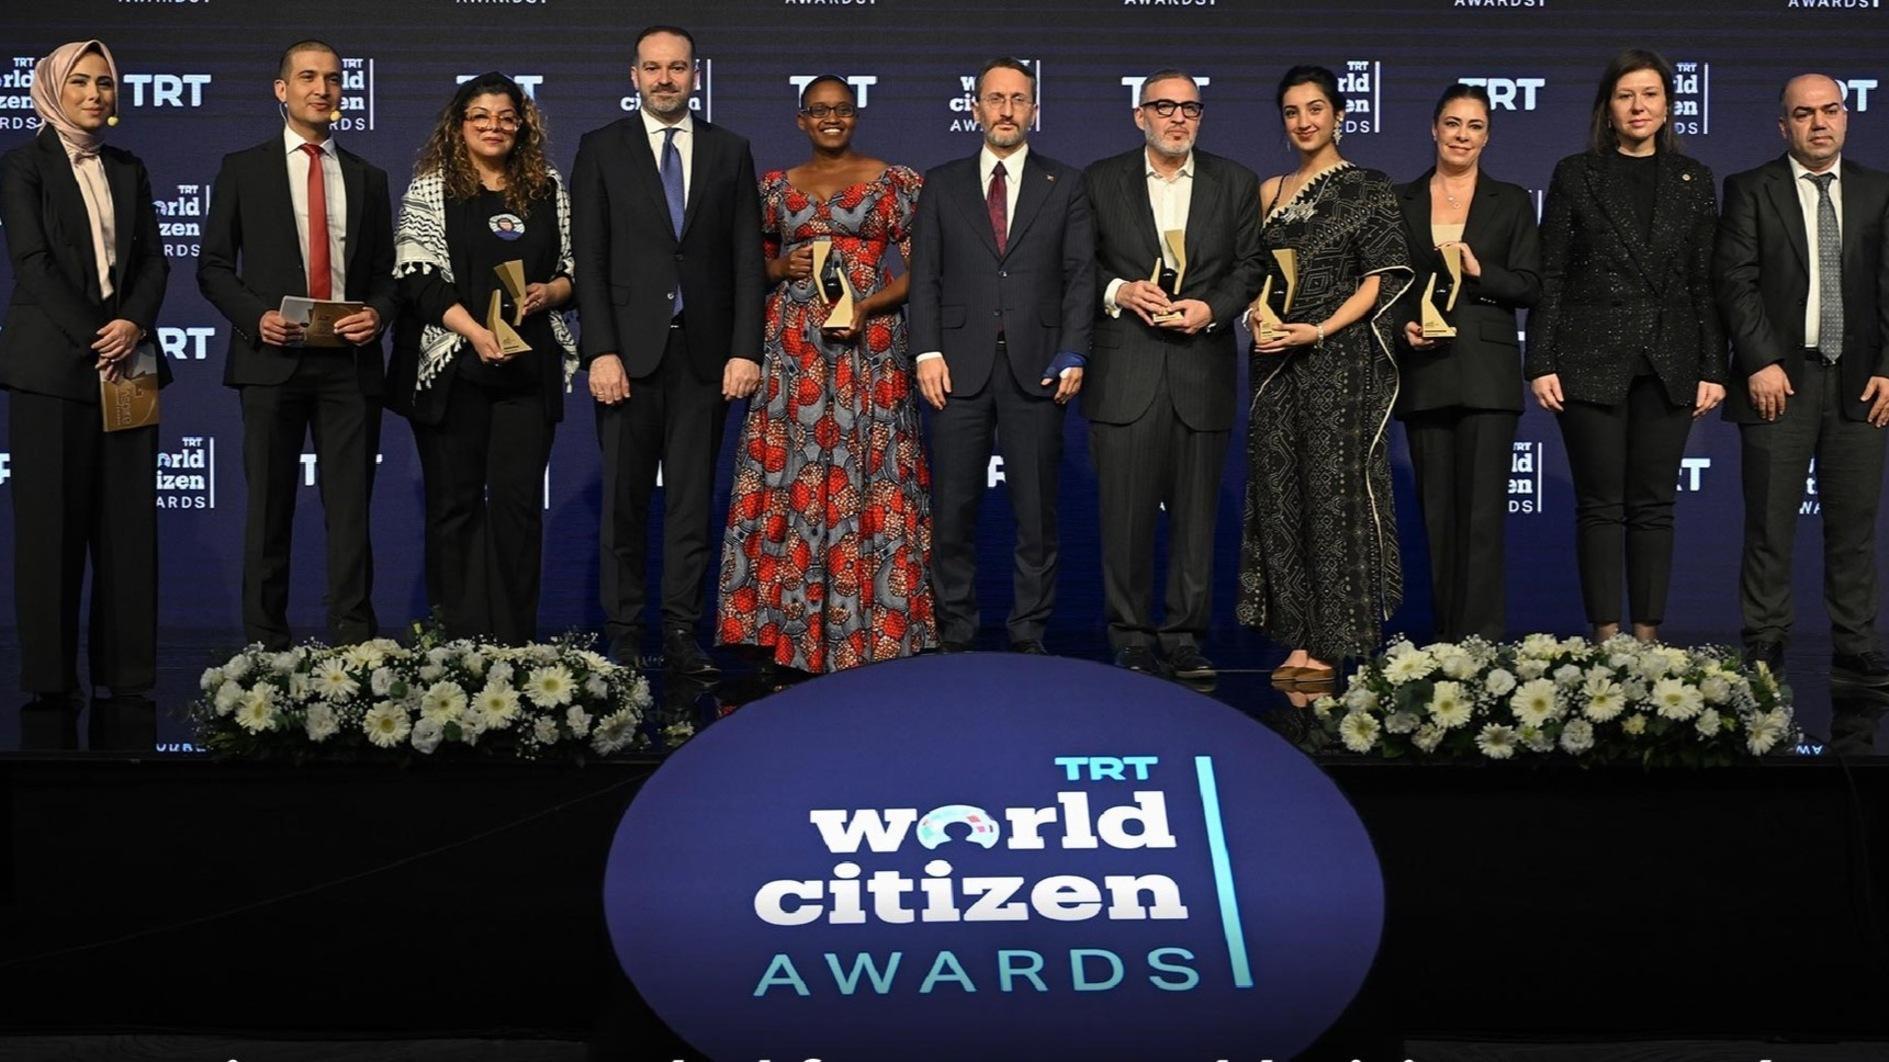 Winnaars bekend gemaakt voor “TRT World Citizen Awards”